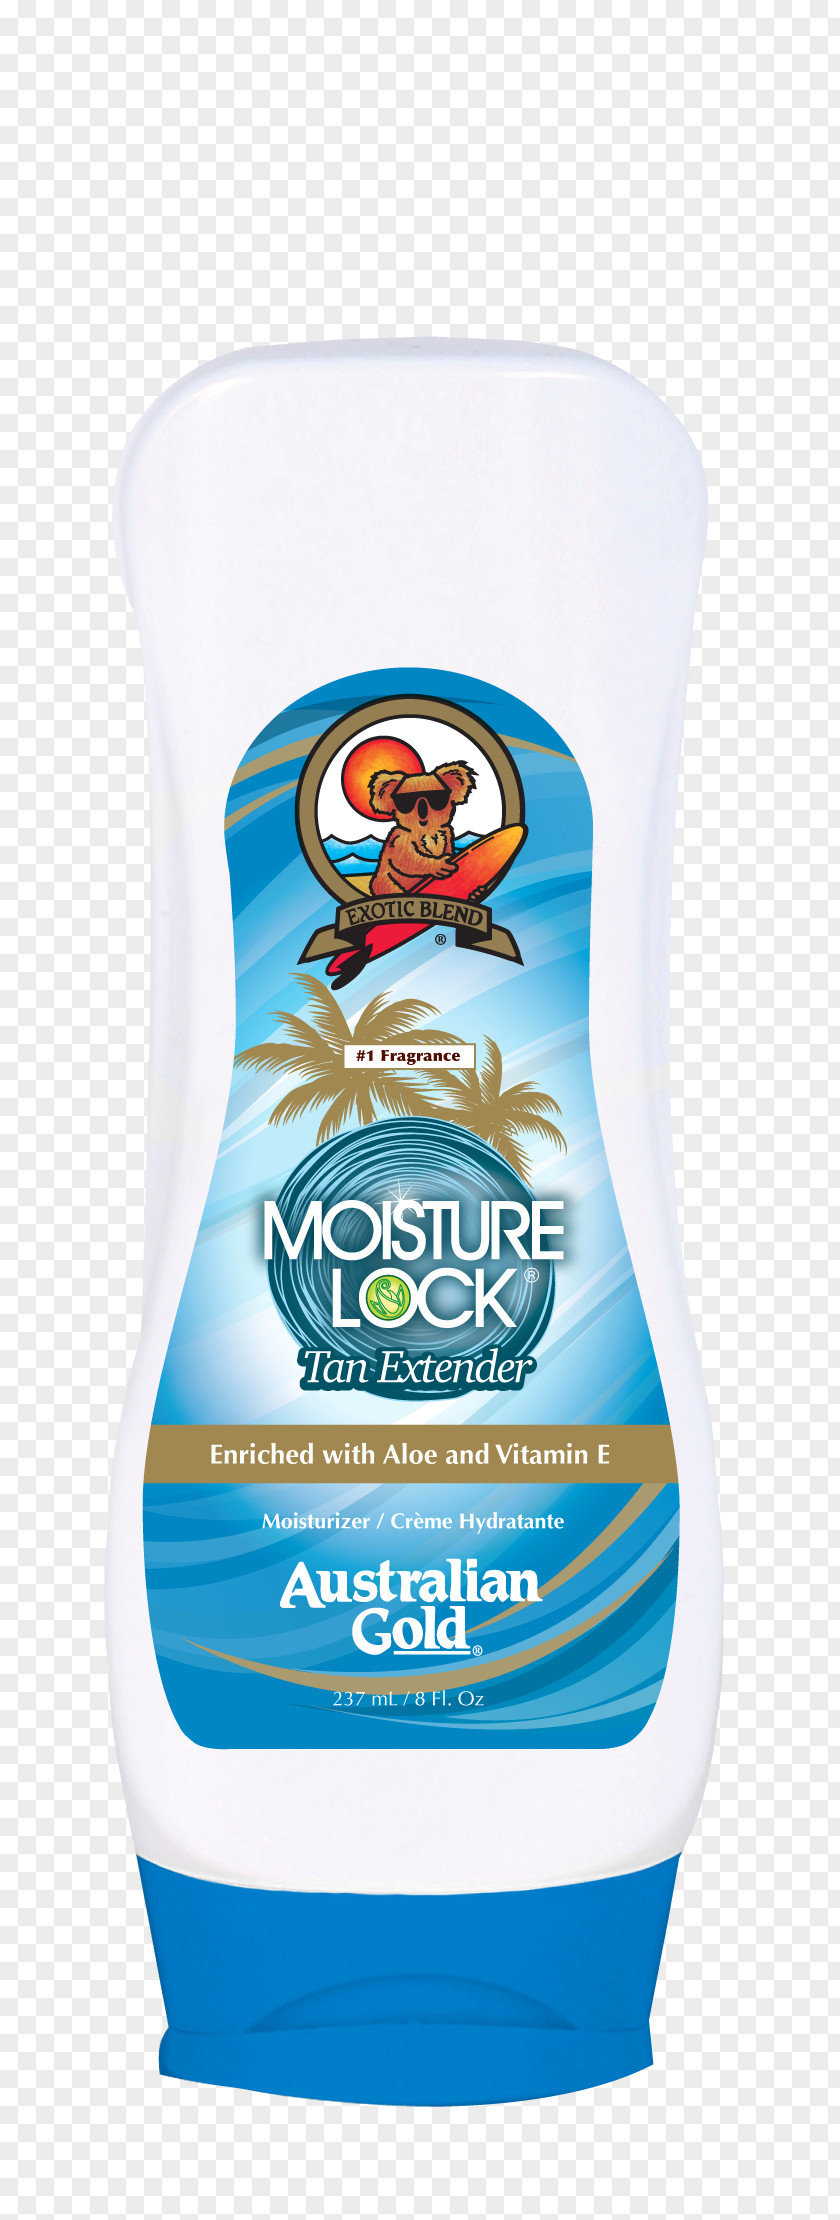 Sun Tanning Sunscreen Australian Gold Moisture Lock Tan Extender Lotion PNG